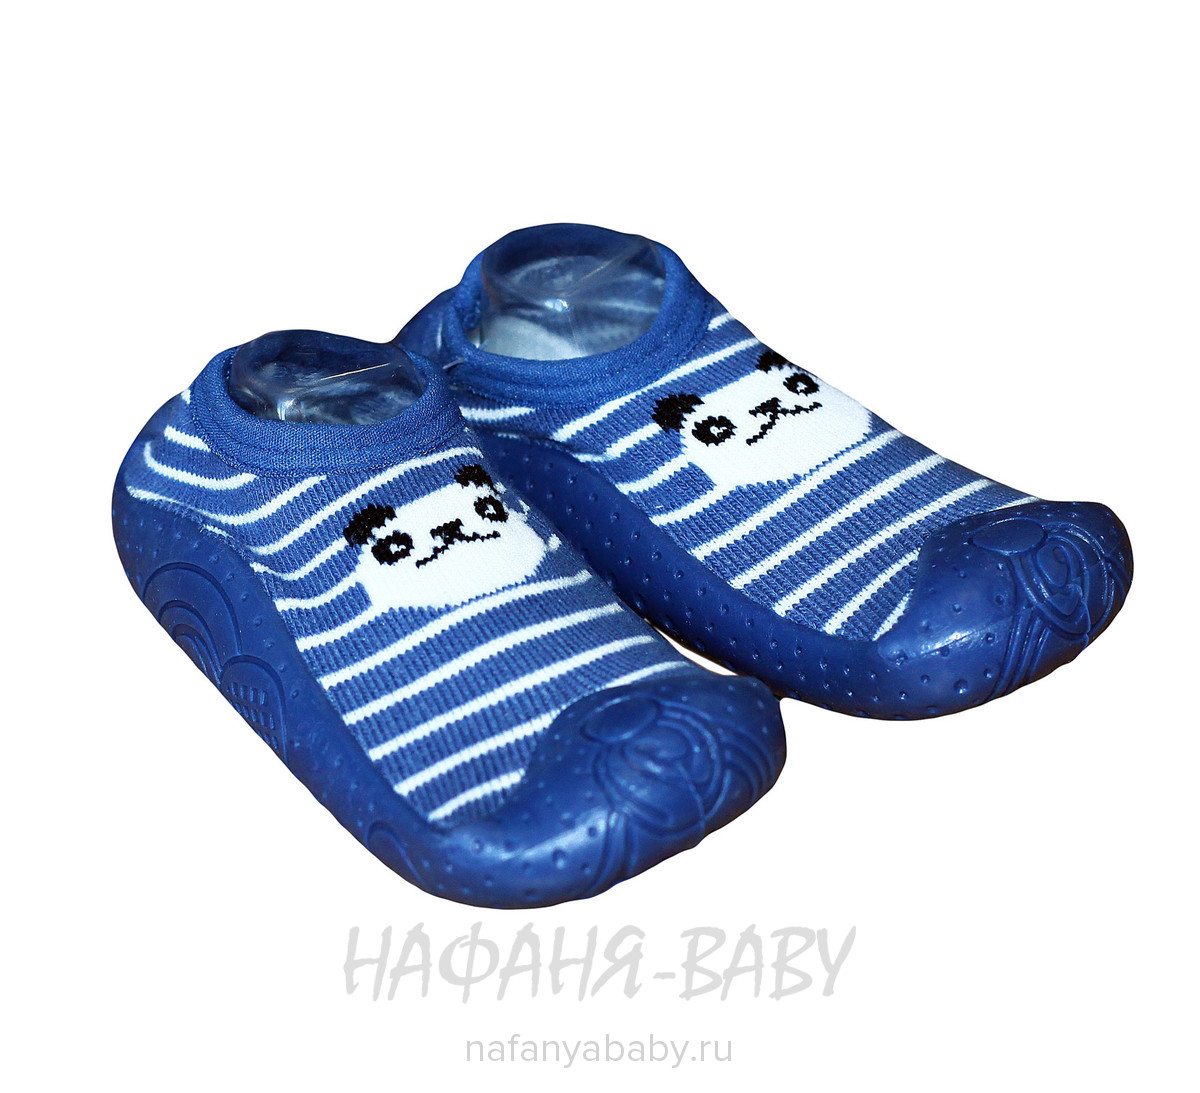 Ботиночки - носочки Fluo Sand, купить в интернет магазине Нафаня. арт: 7053.